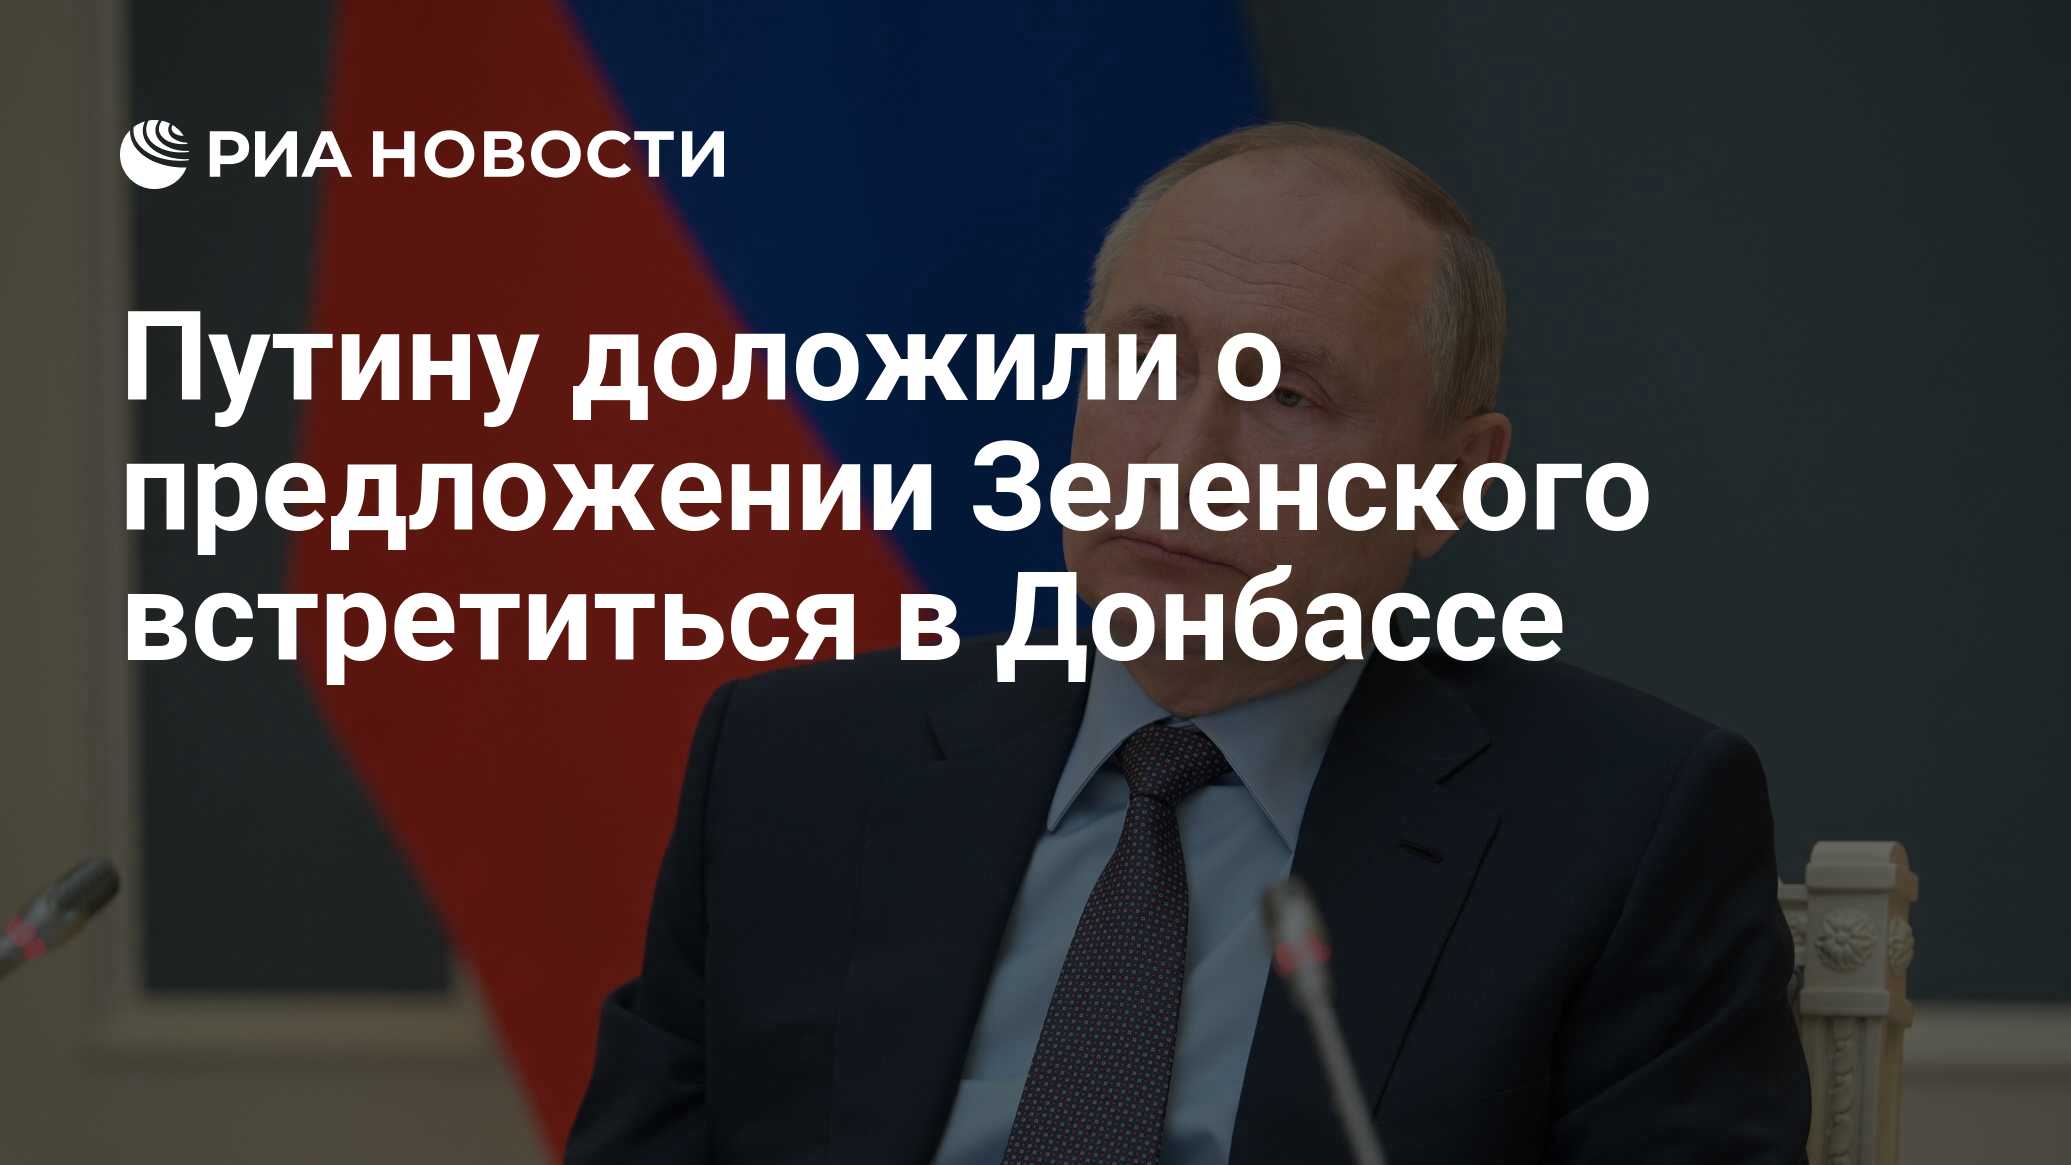 Путину доложили о предложении Зеленского встретиться Донбассе